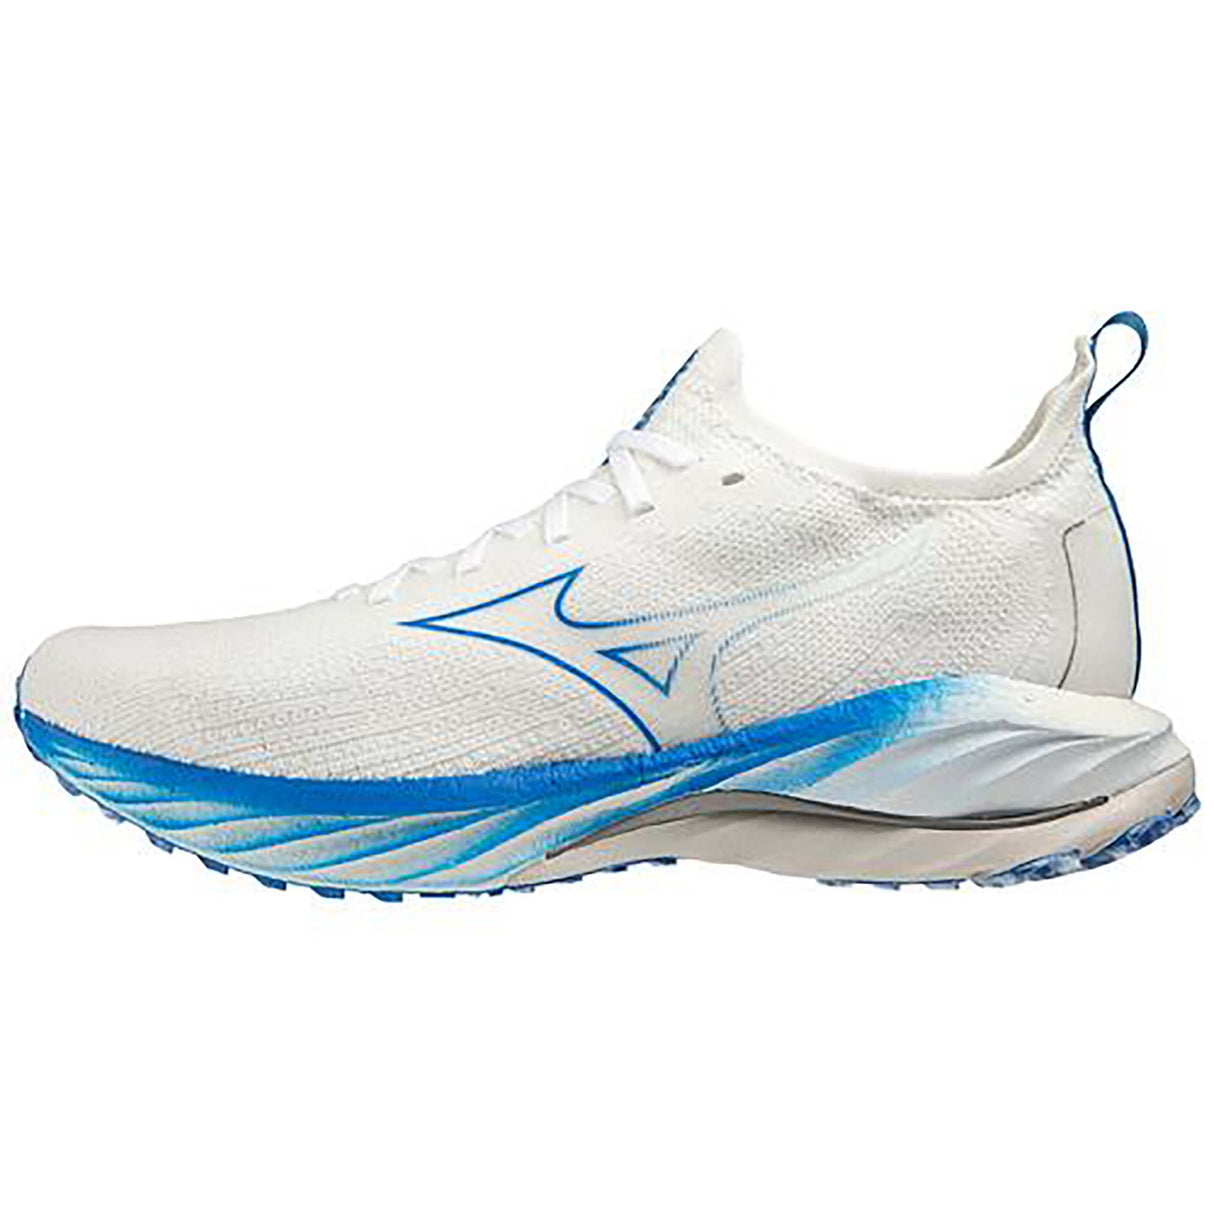 Mizuno Wave Neo Wind chaussures de course à pied homme undyed white peace blue